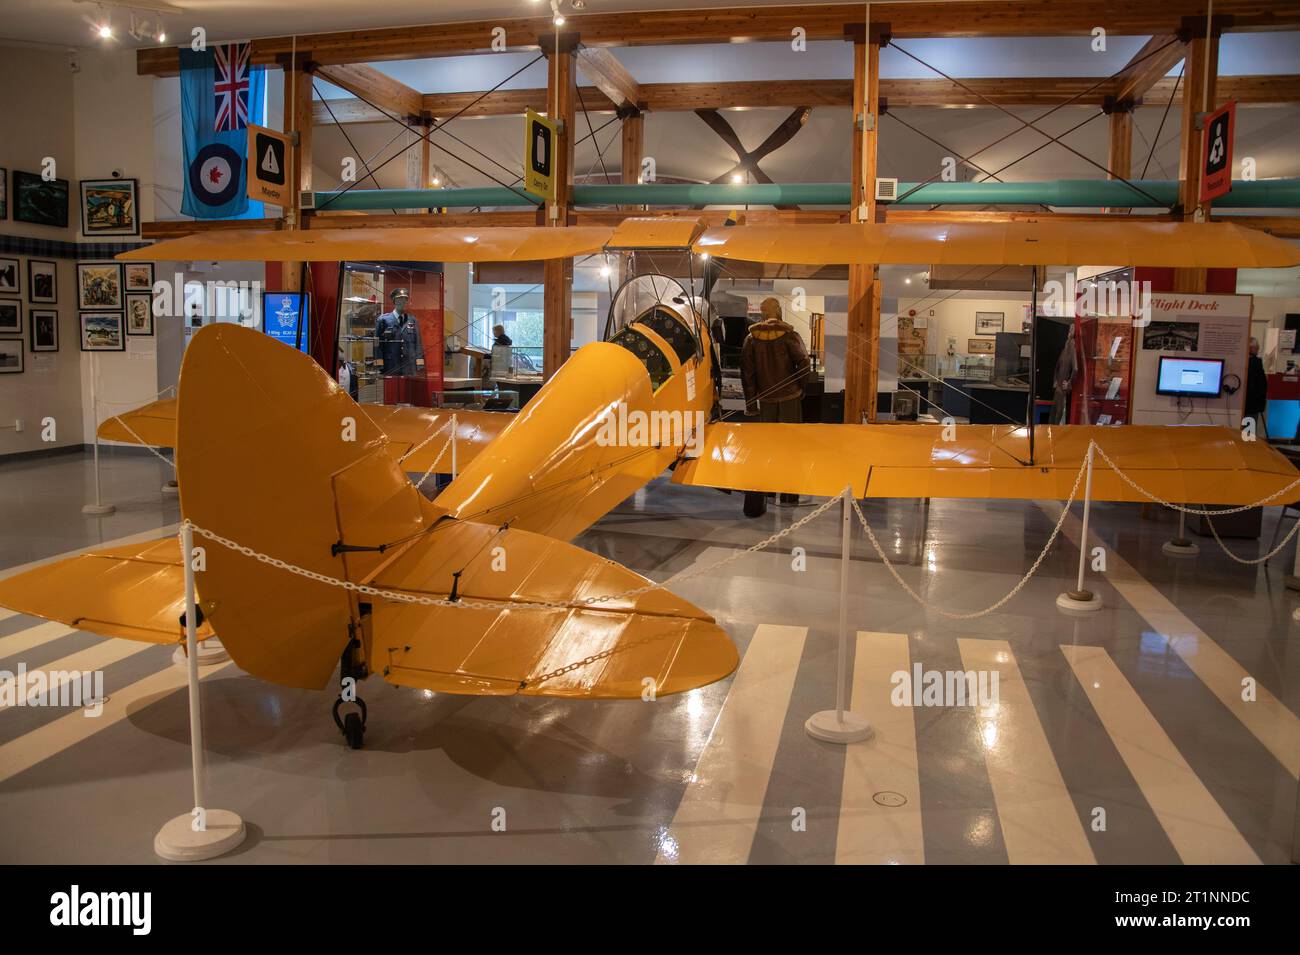 1942 avion d'entraînement deHavilland Tiger Moth à l'intérieur du Musée de l'aviation de l'Atlantique Nord à Gander, Terre-Neuve-et-Labrador, Canada Banque D'Images